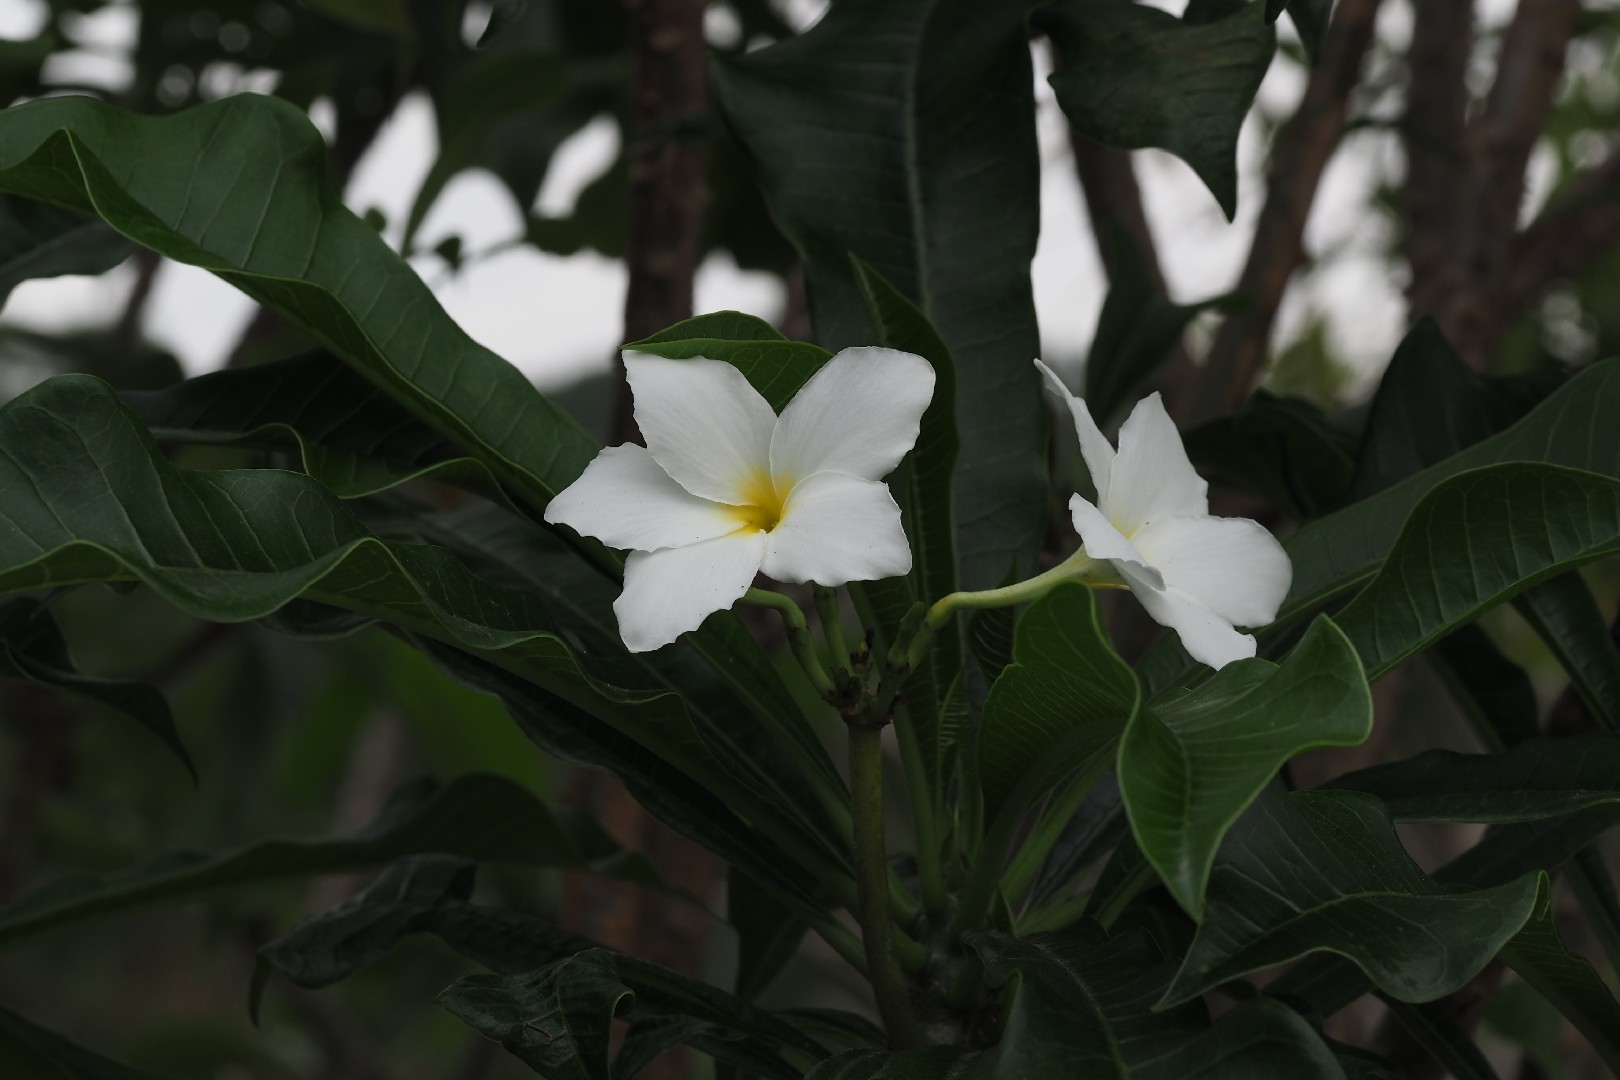 Jasmim-do-caribe (Plumeria pudica) - PictureThis